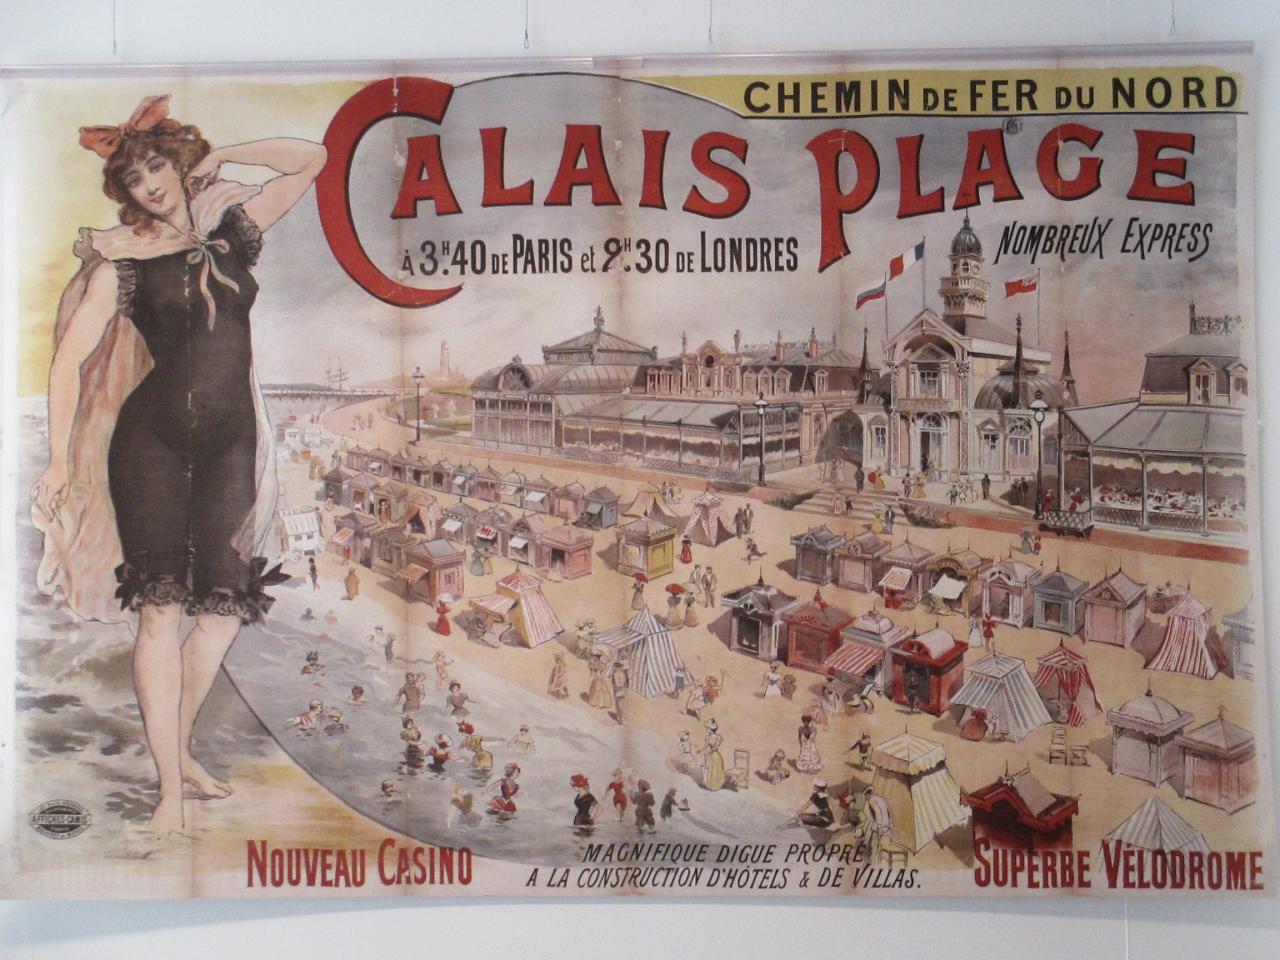 Promotion pour Calais-plage au siècle dernier